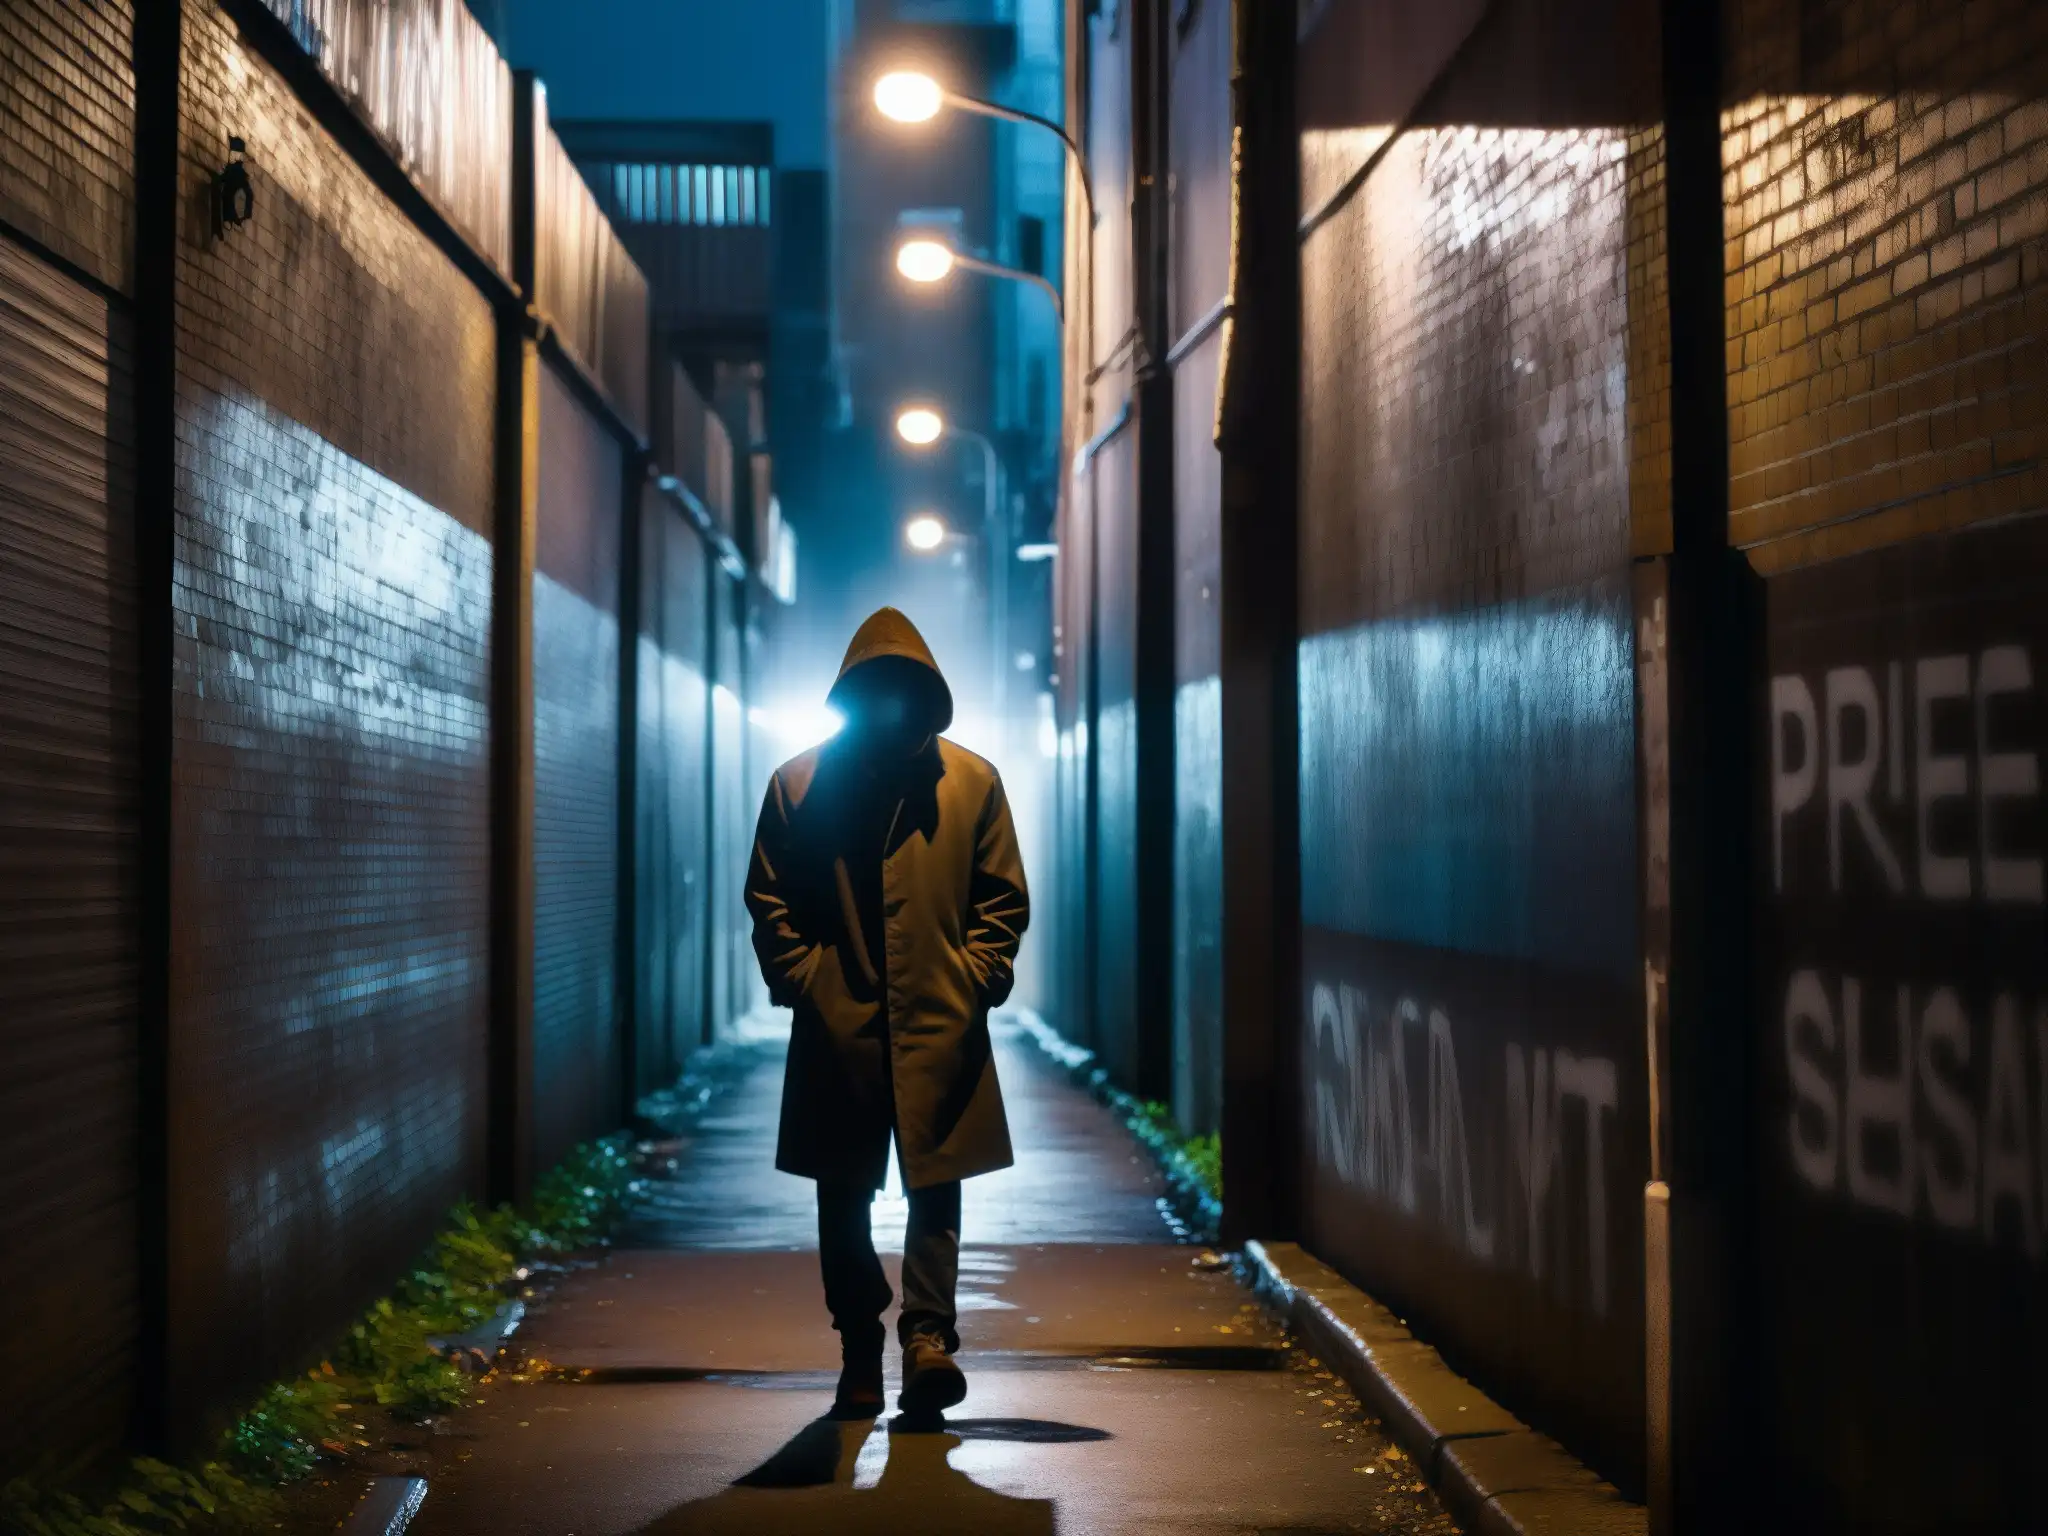 En un callejón oscuro, una figura solitaria se oculta en las sombras, rodeada de graffiti y luces parpadeantes, creando un ambiente misterioso